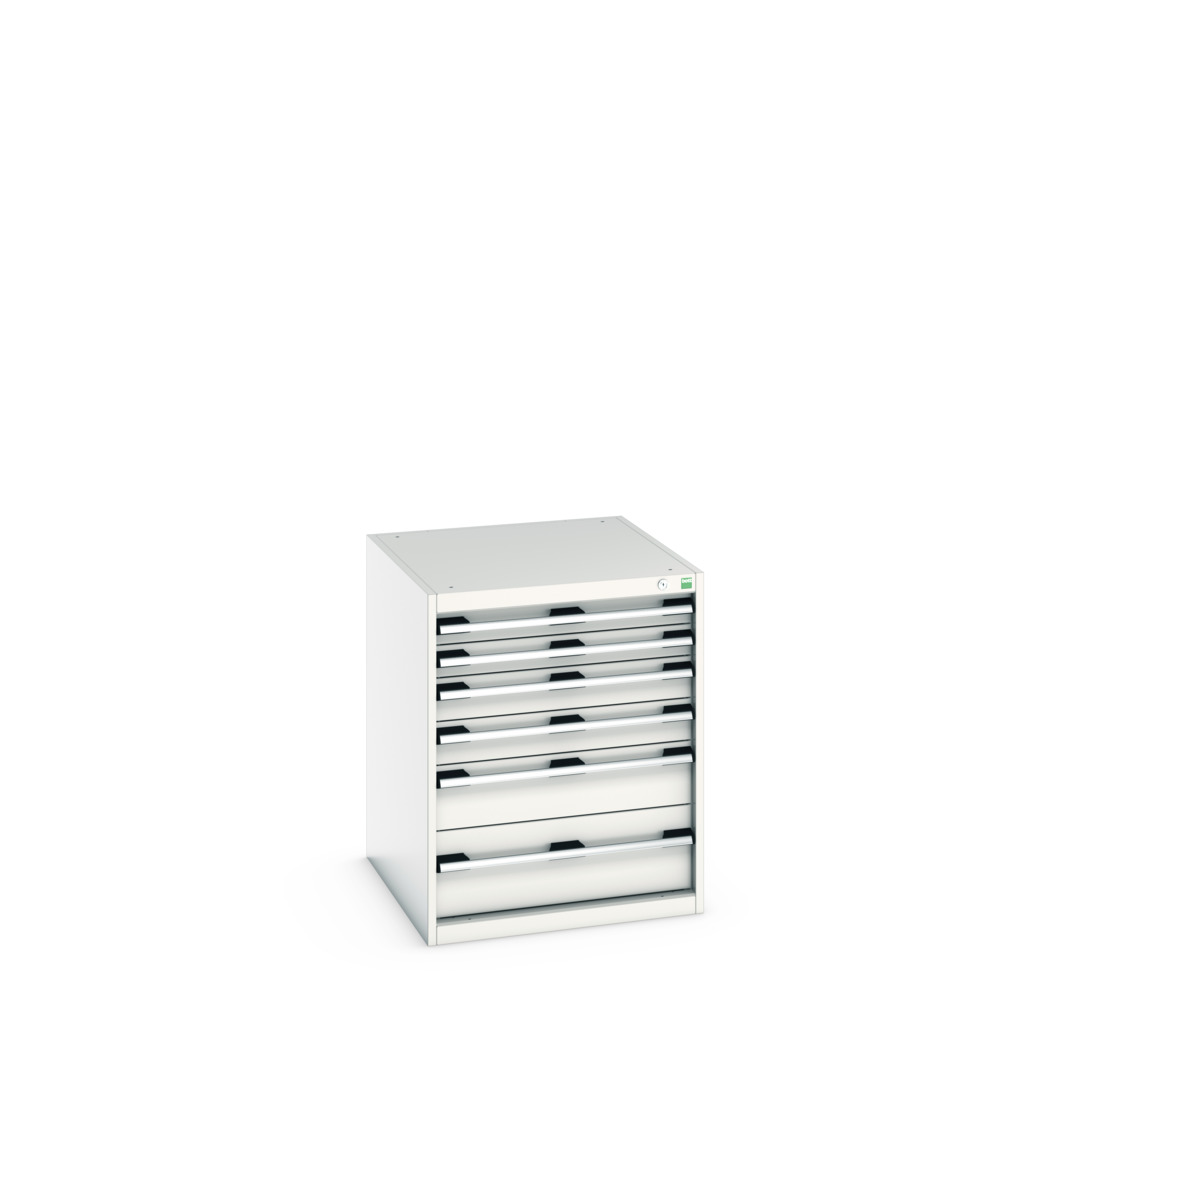 40027019.16V - cubio drawer cabinet